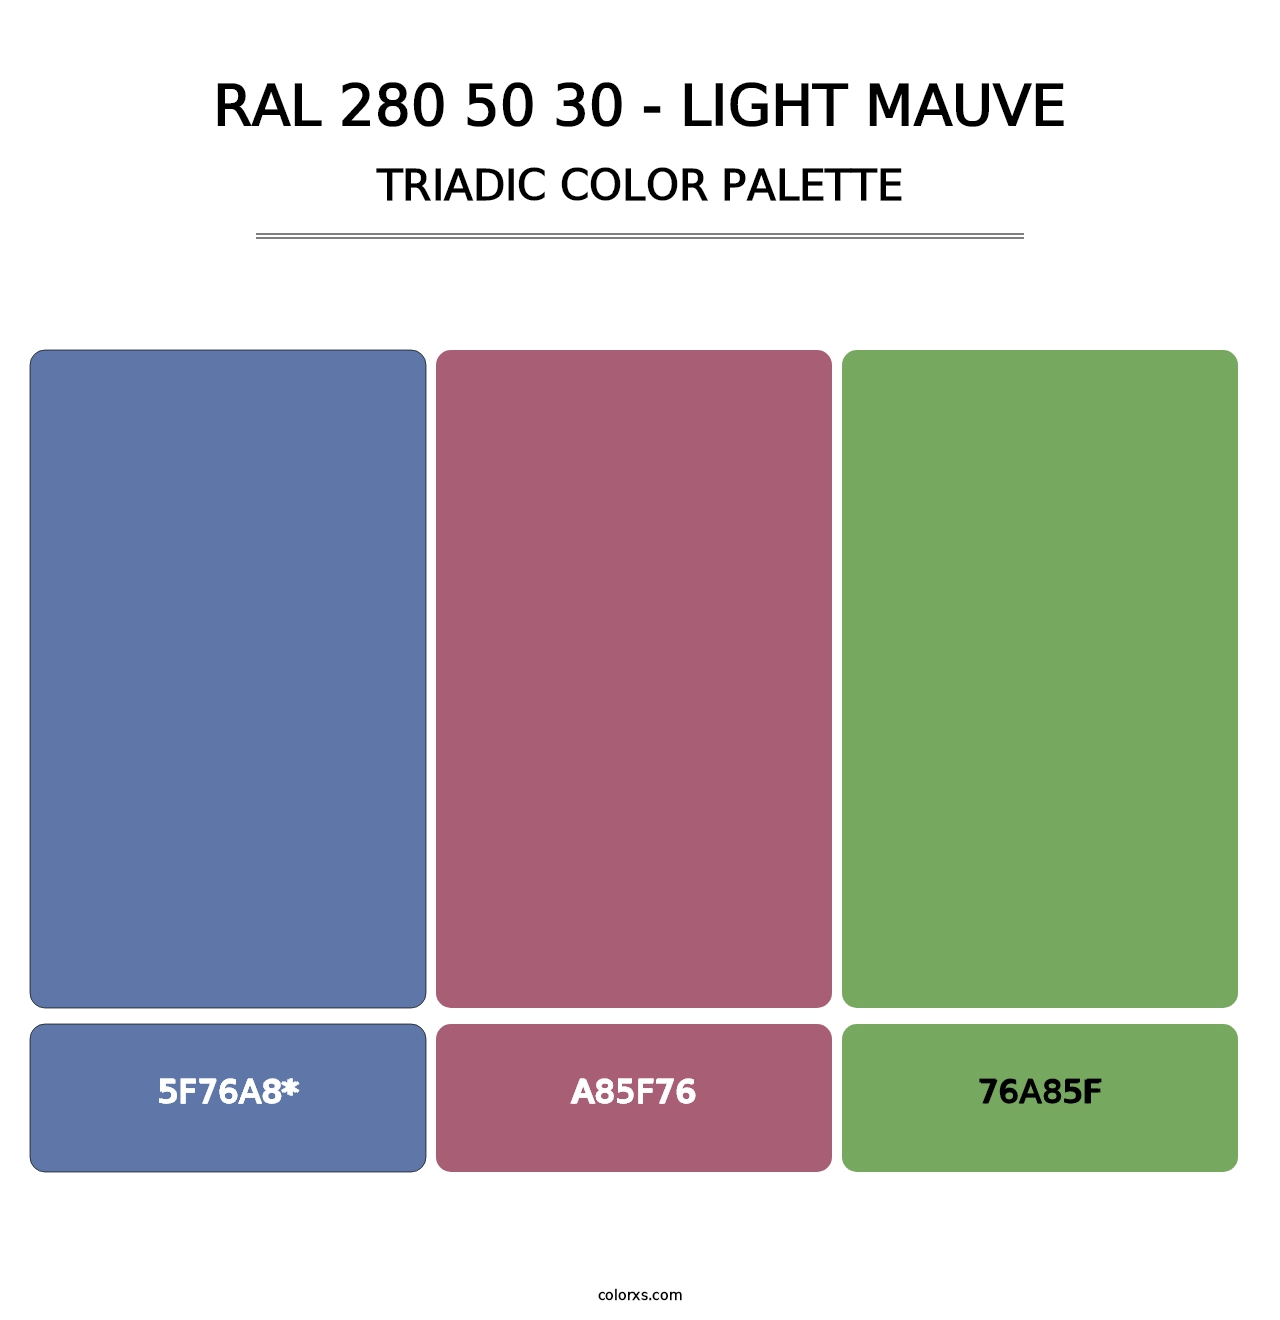 RAL 280 50 30 - Light Mauve - Triadic Color Palette